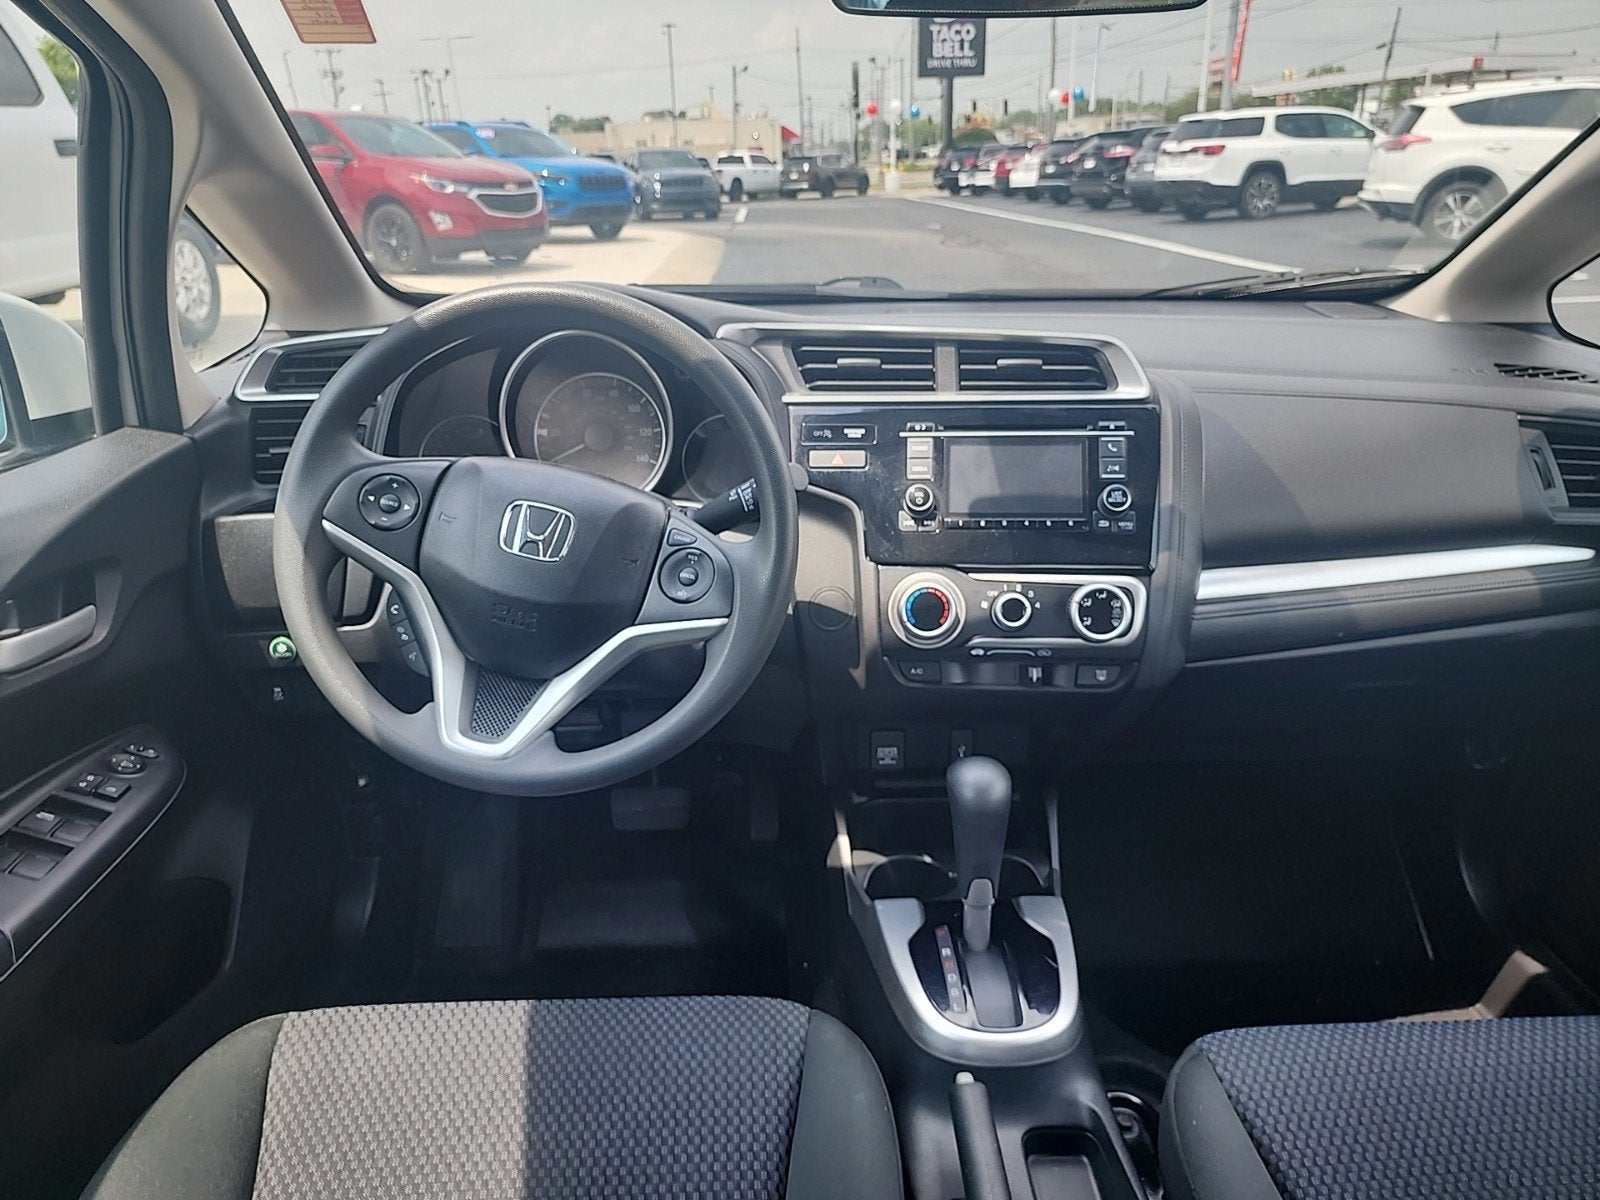 2018 Honda Fit LX